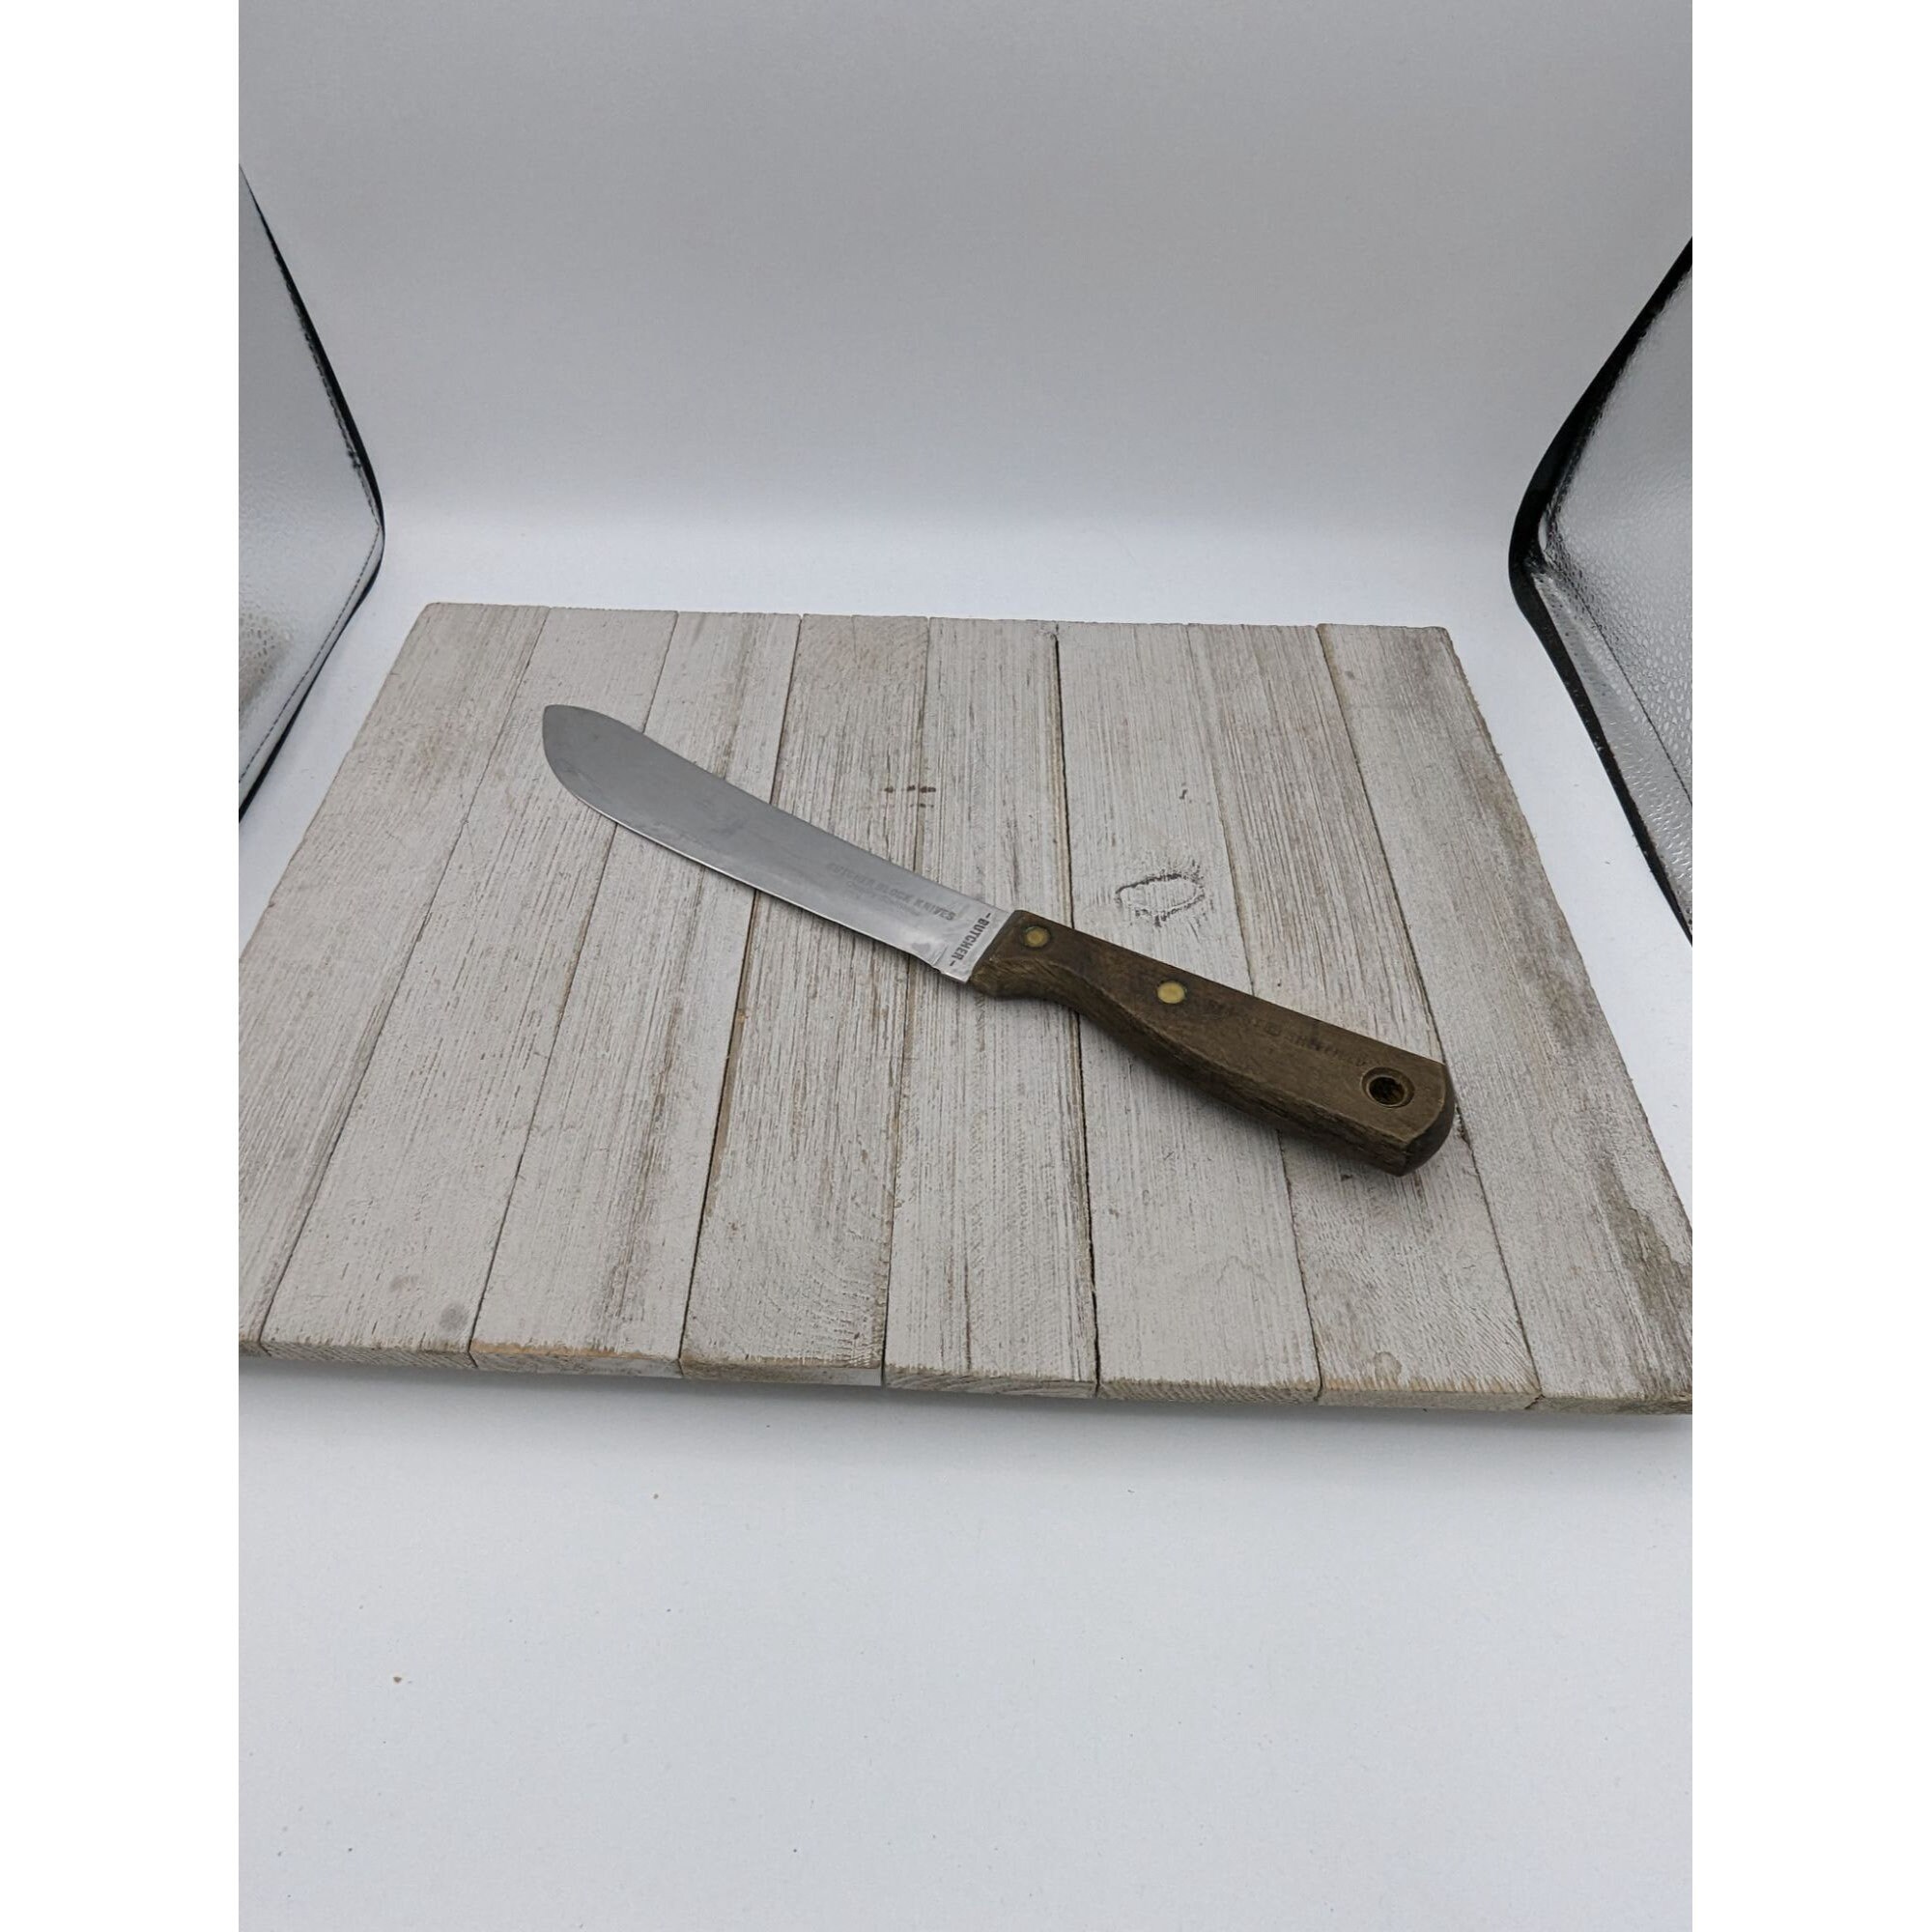 Plastic Kitchen Utensils Sheath Ceramic Ceramic Sheath Knife Protector  Plastic Sheaths Knive Guard Kitchen Utensils Knives - AliExpress